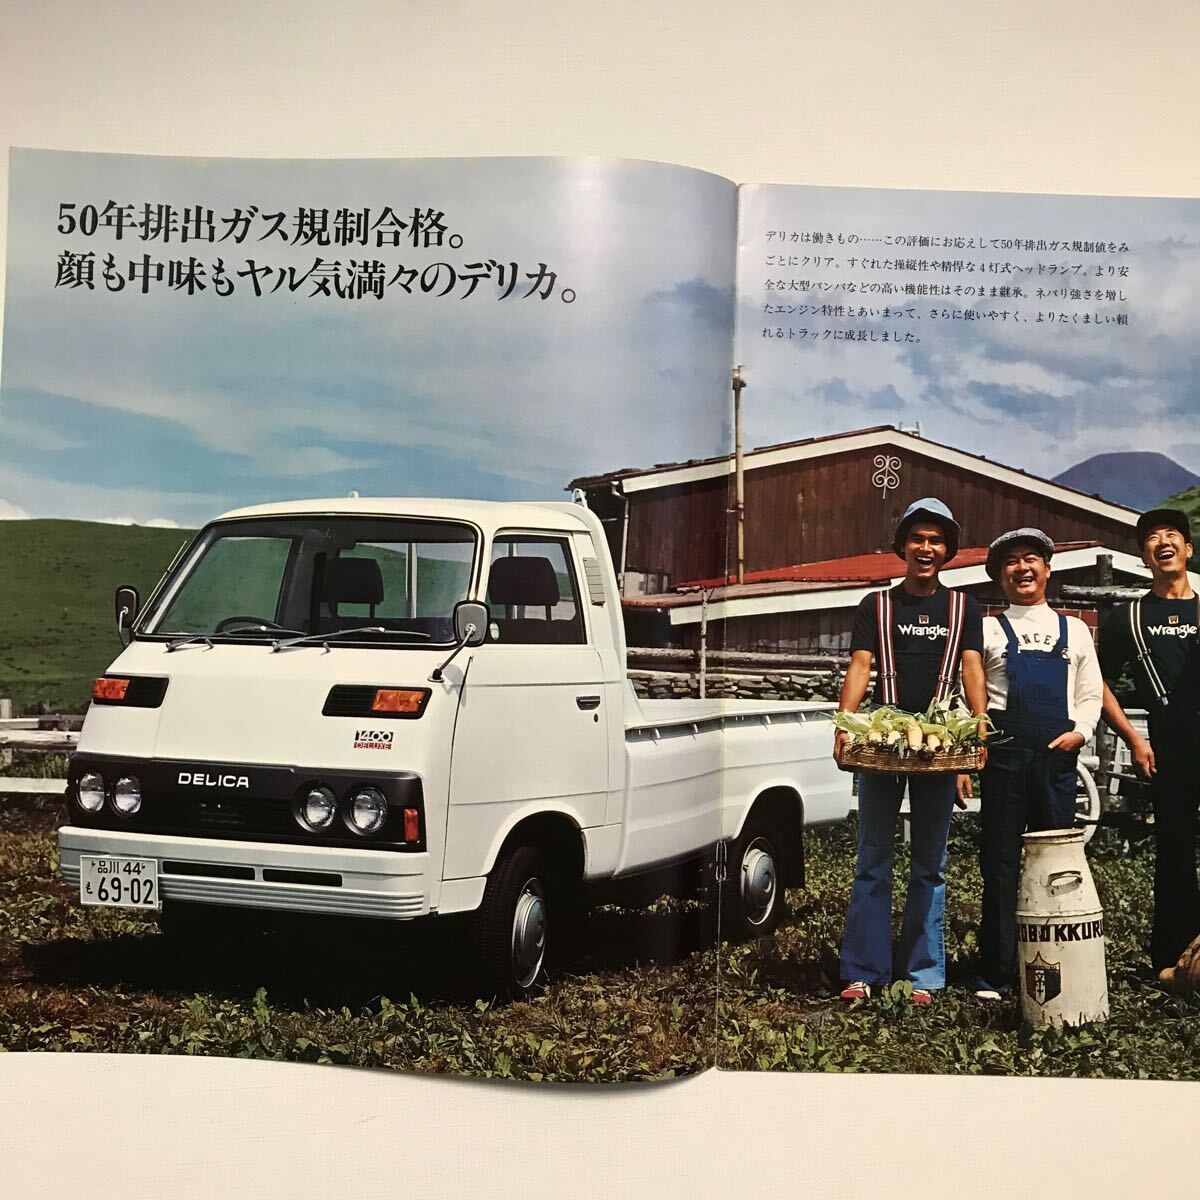 三菱デリカ1400トラック カタログの画像2